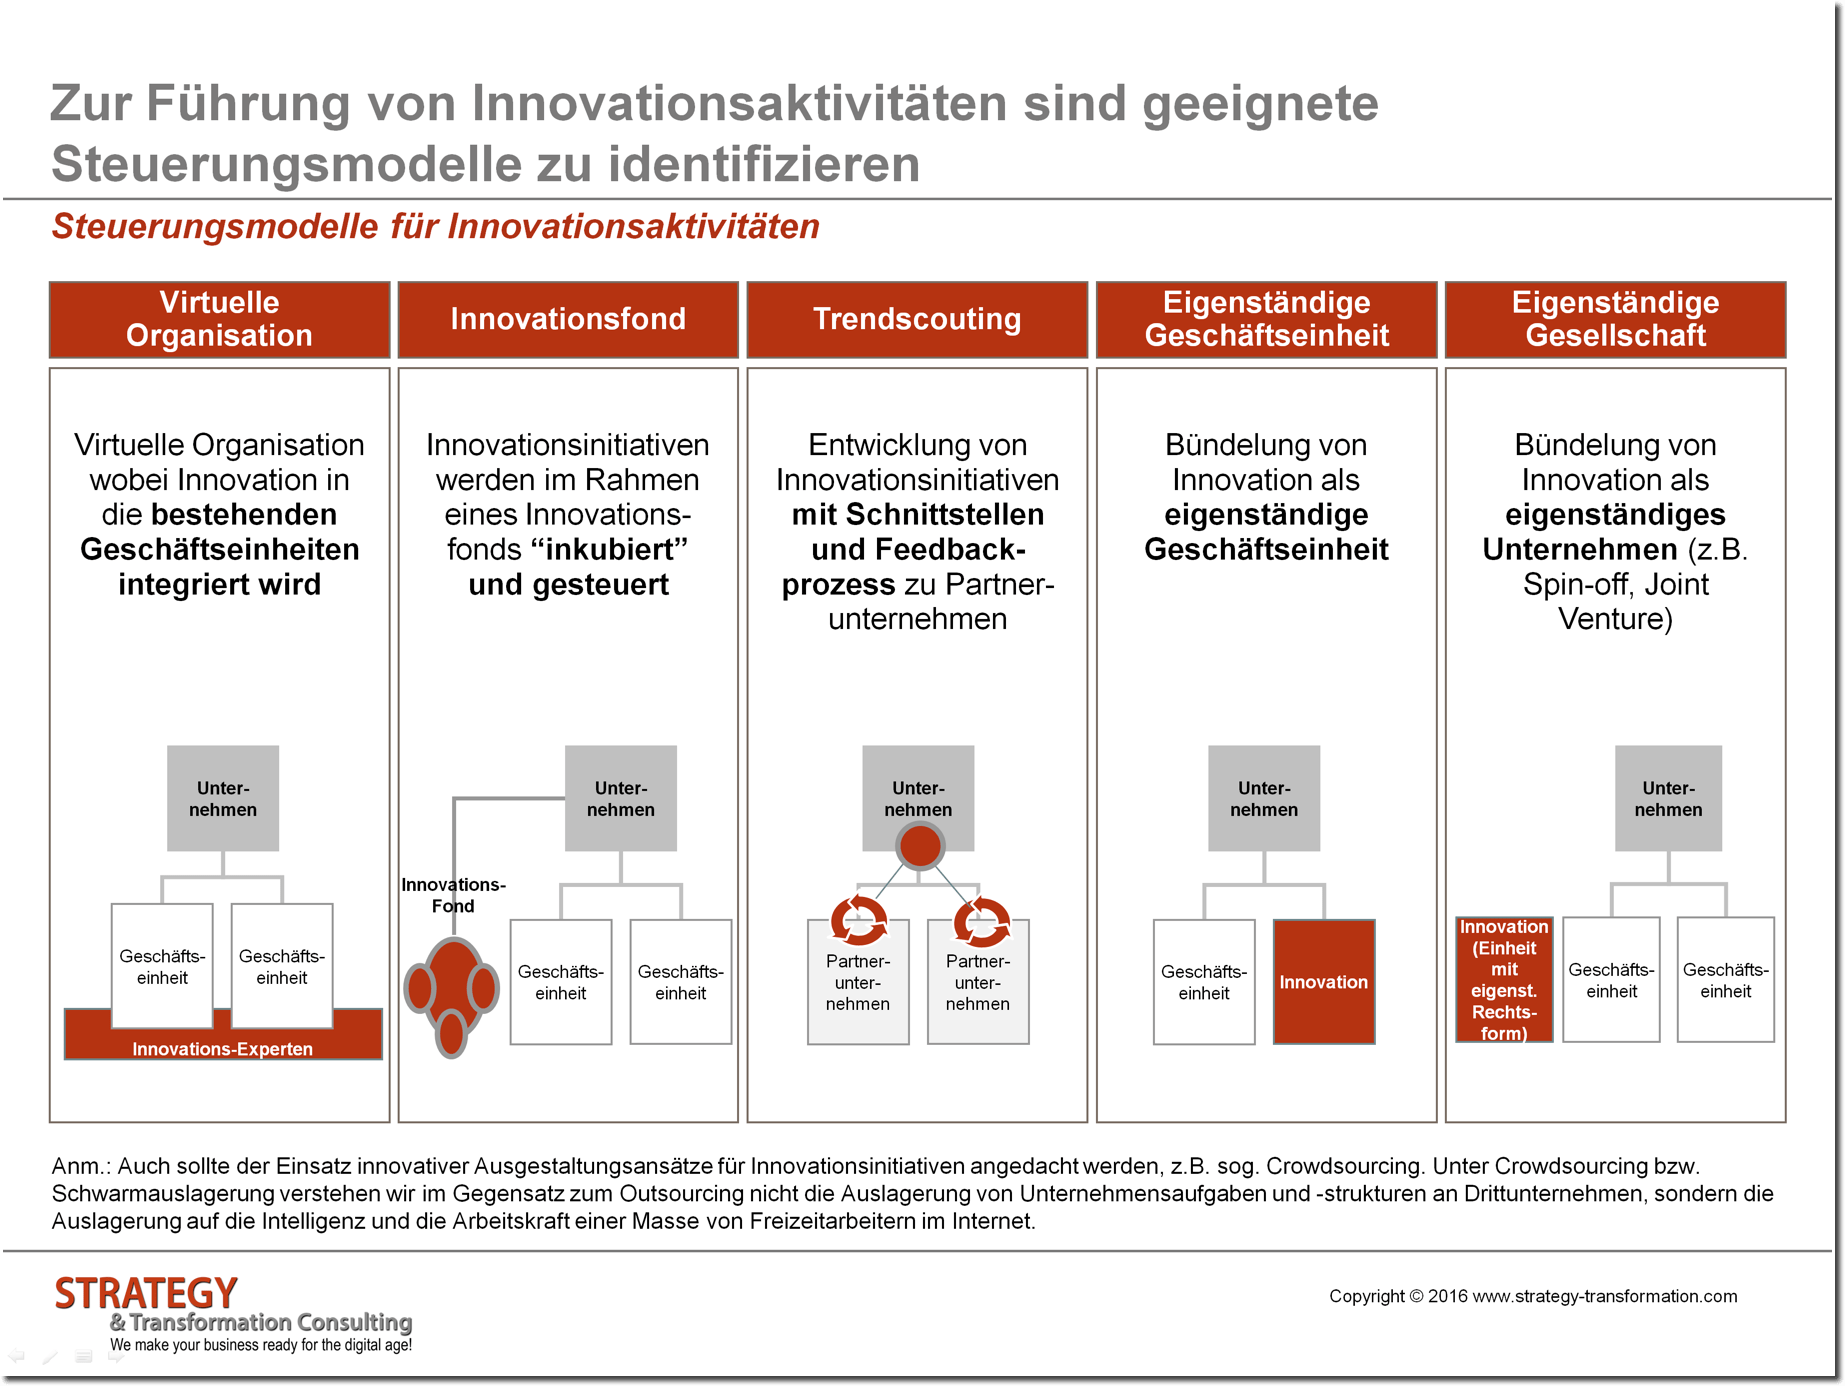 Steuerungsmodelle für Innovationsaktivitäten